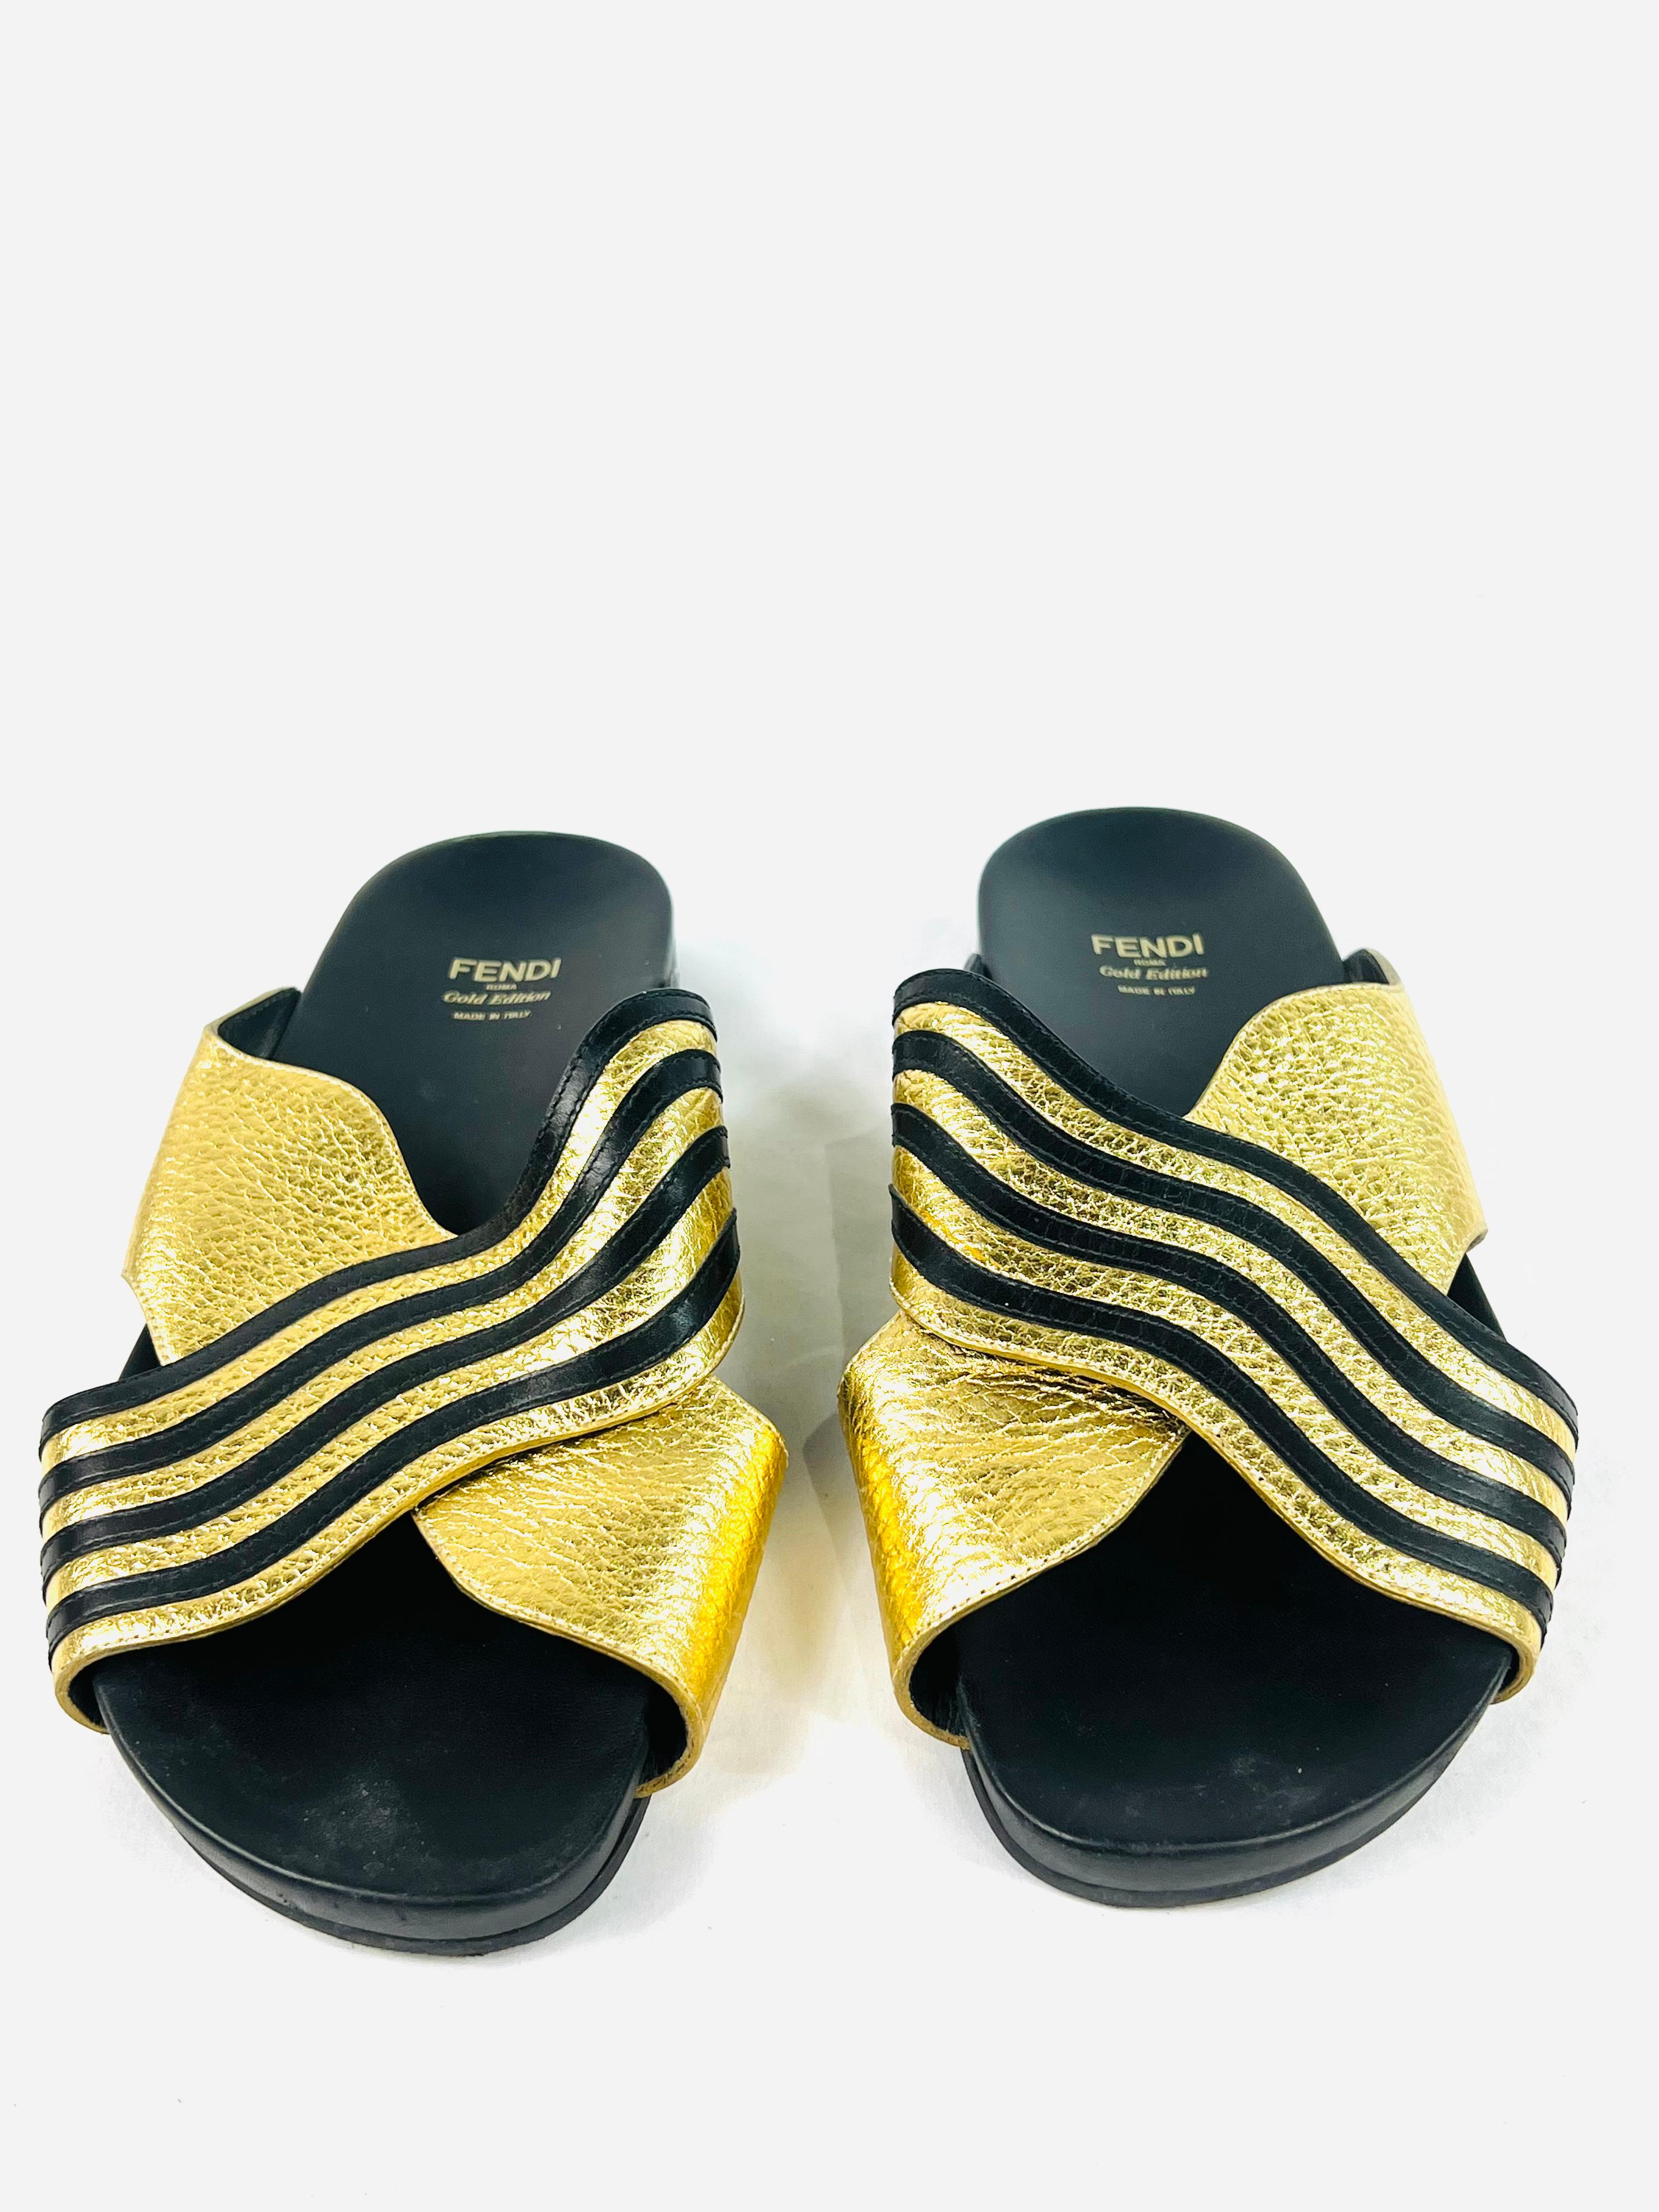 Einzelheiten zum Produkt:

Die Schuhe sind im Gladiatorenstil, aus goldenem und schwarzem Leder und im Kreuzstil mit gewelltem Motiv.